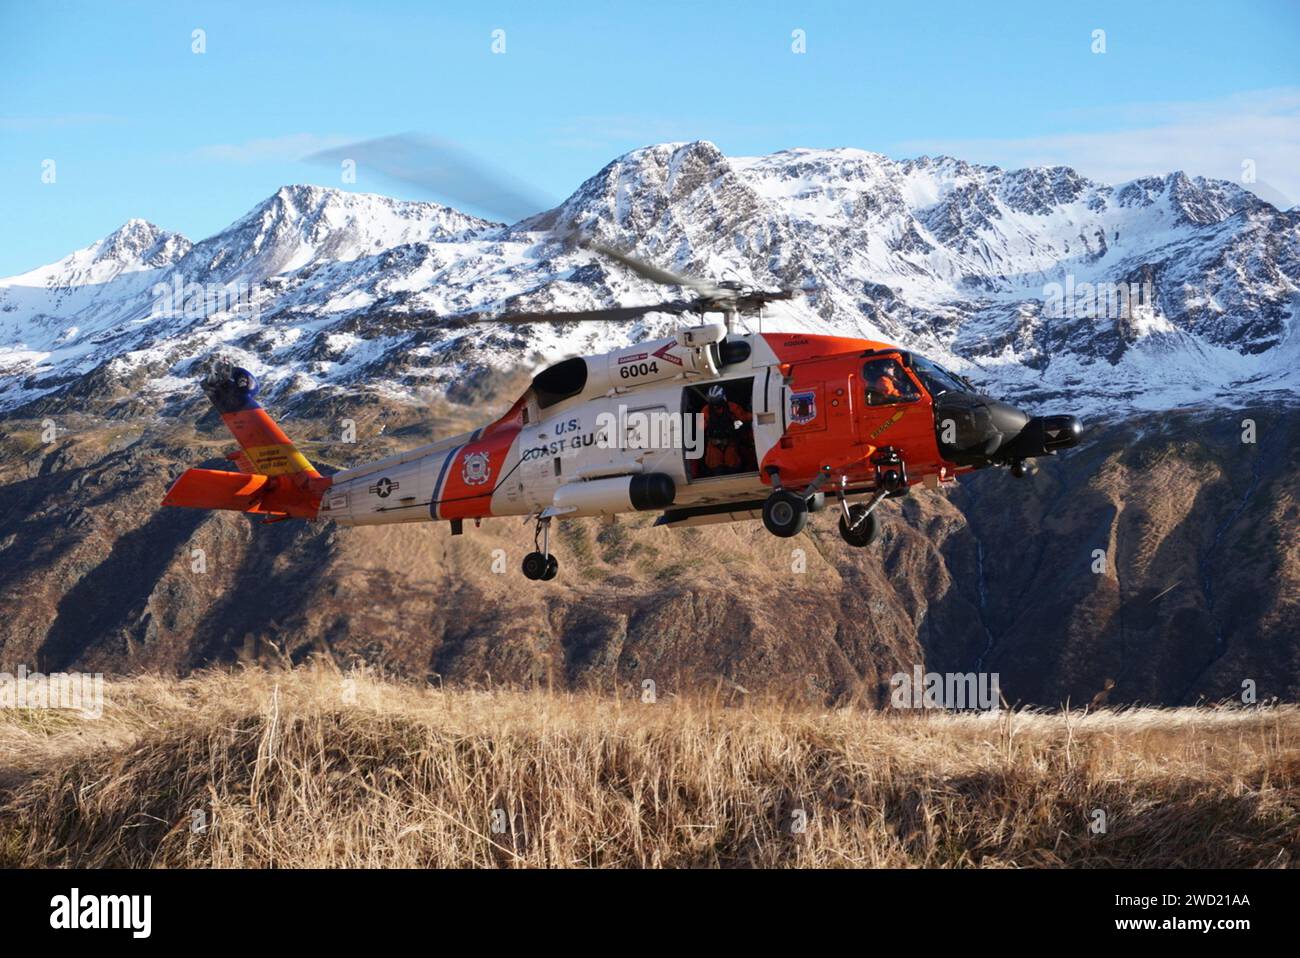 A Coast Guard Air Station Kodiak MH-60 Jayhawk helicopter in Kodiak, Alaska. Stock Photo